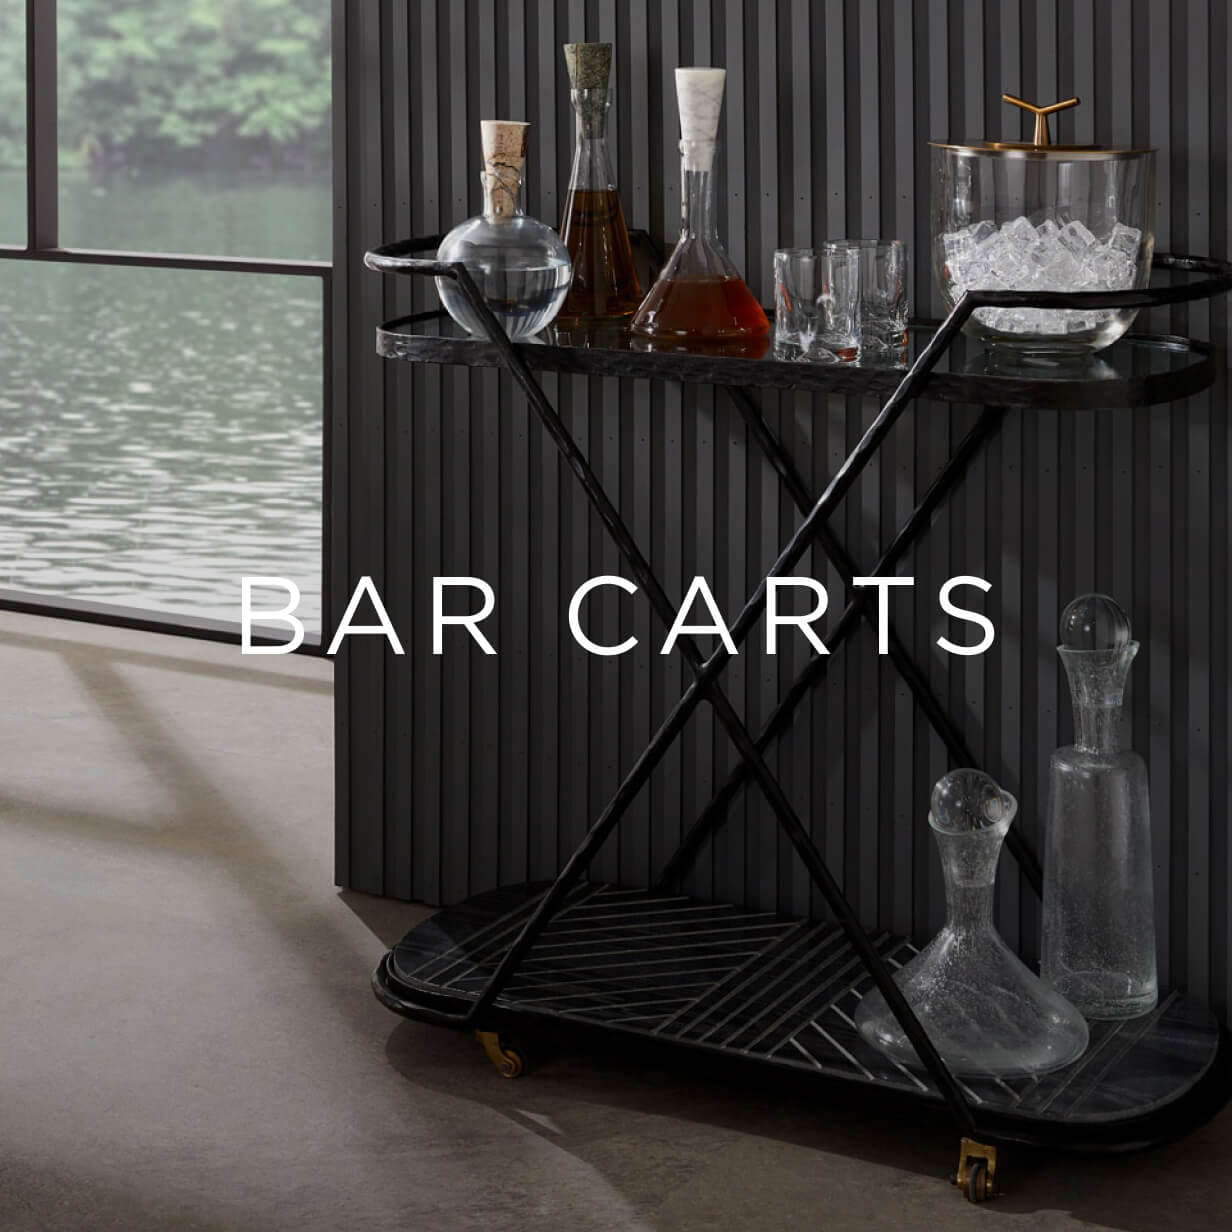 Bar Carts